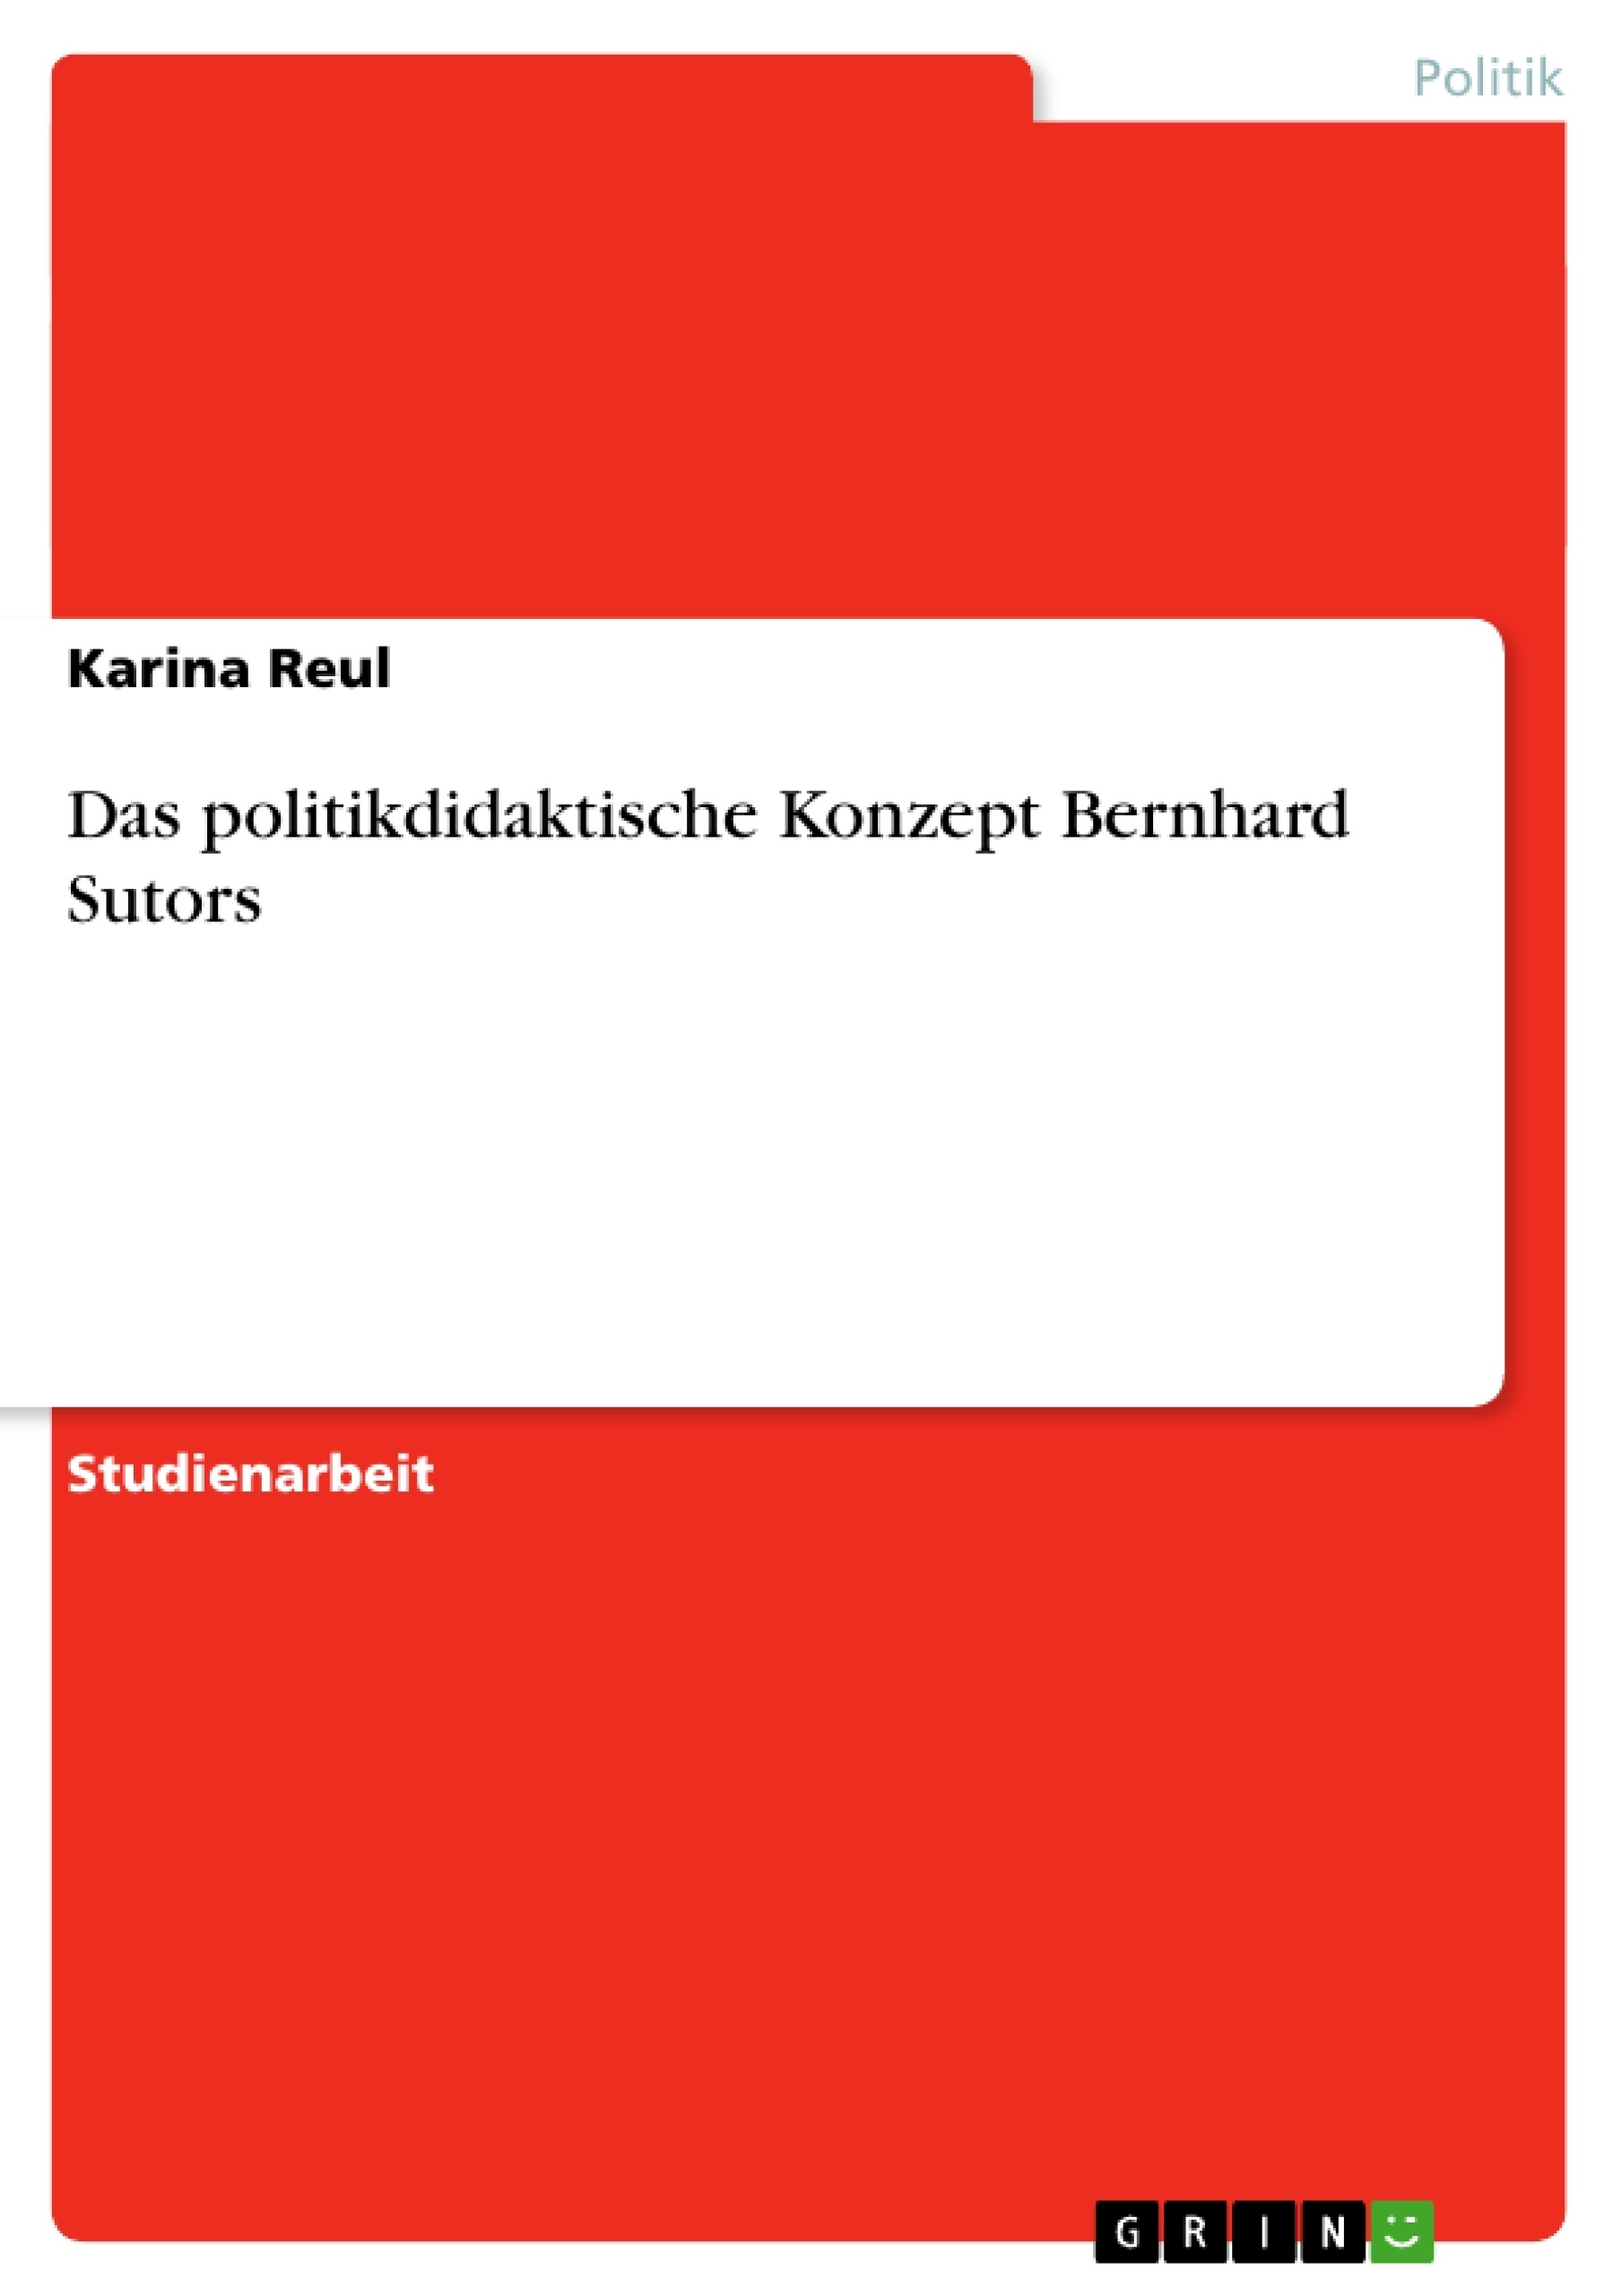 Título: Das politikdidaktische Konzept Bernhard Sutors